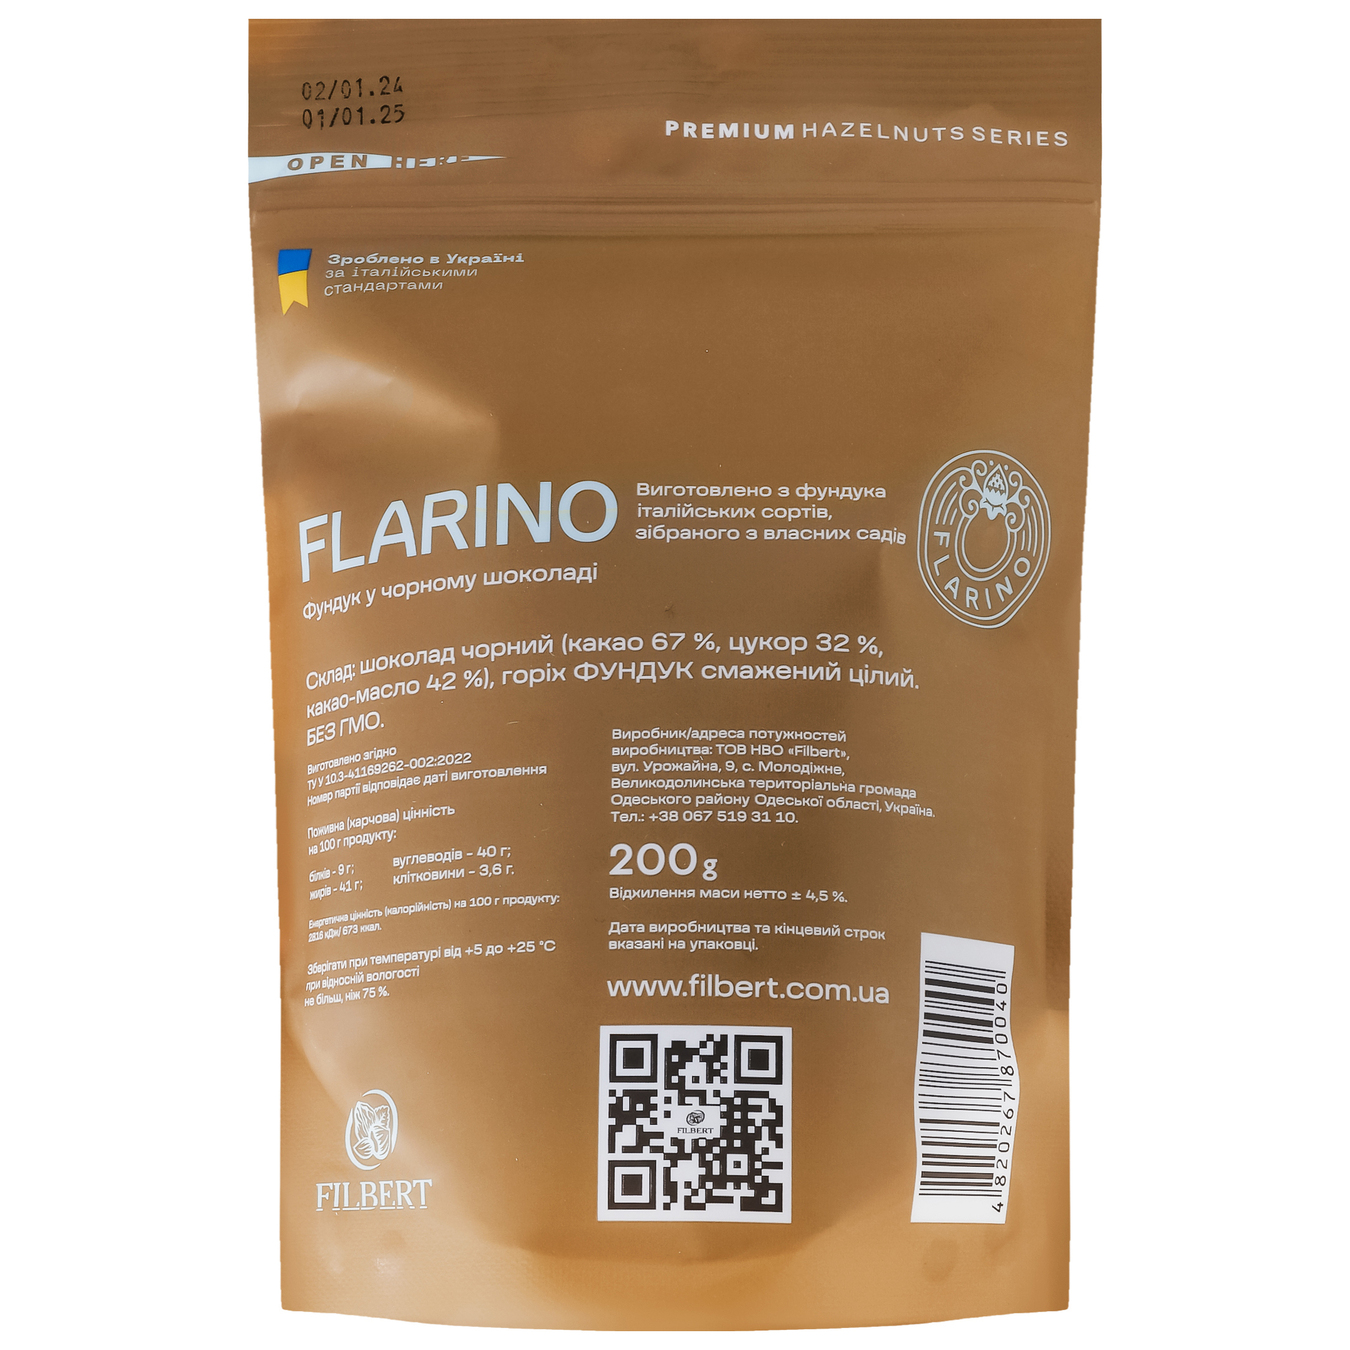 Flarino hazelnuts in dark chocolate 200g 3